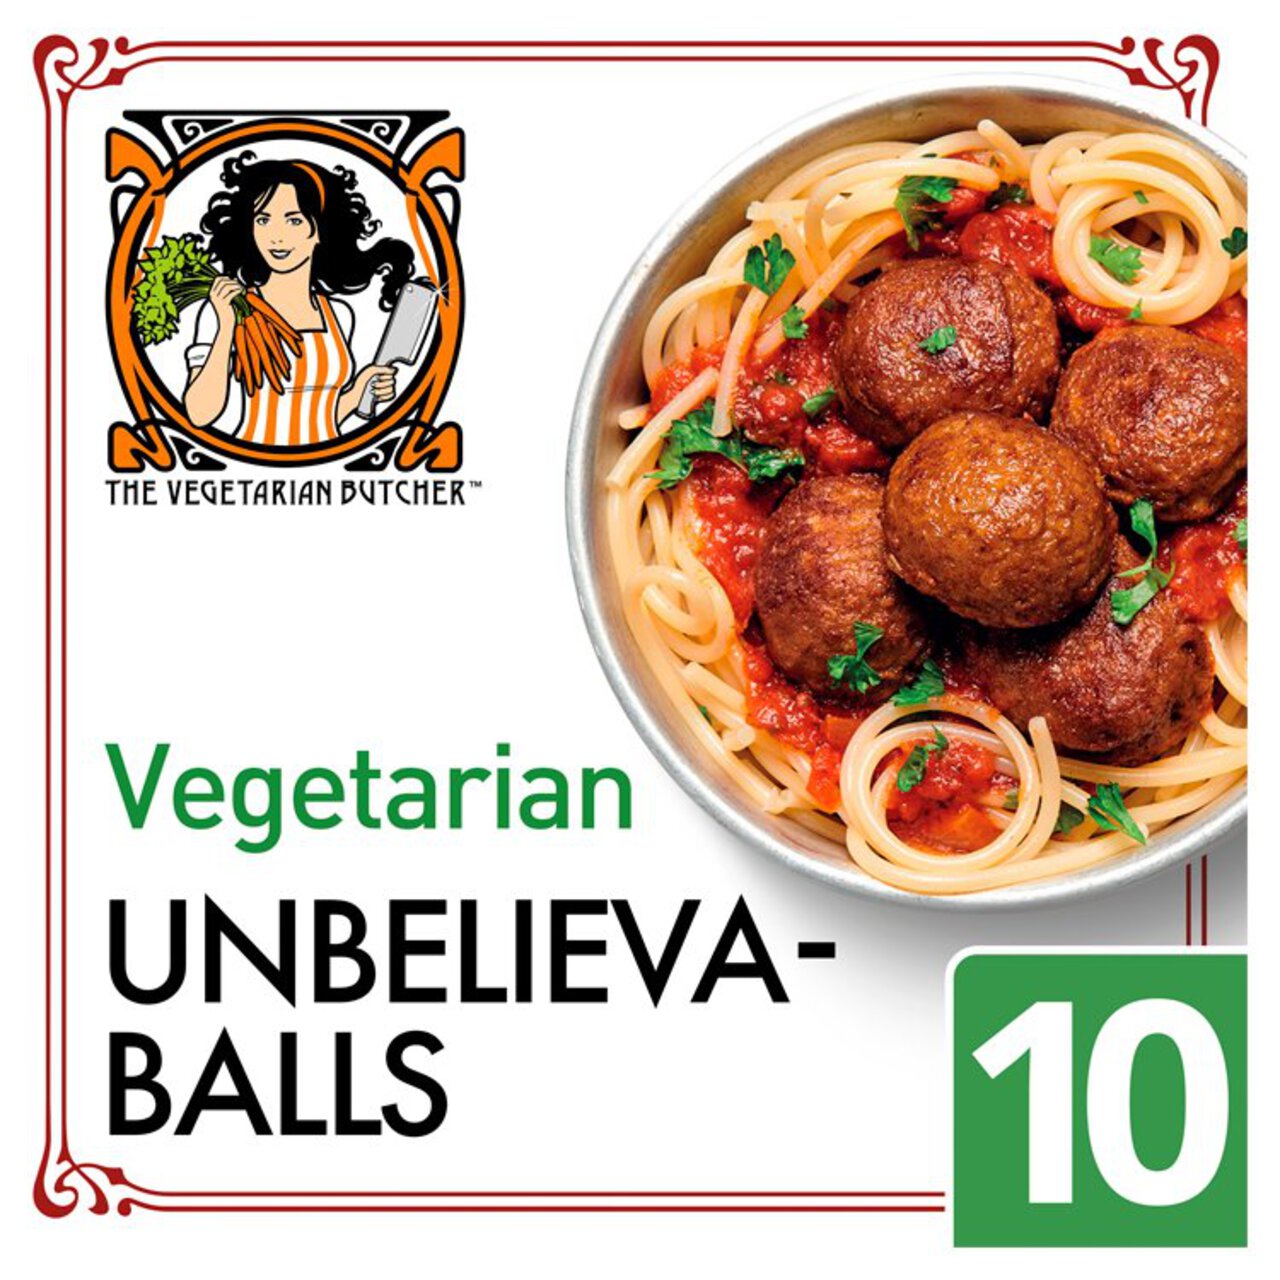 The Vegetarian Butcher Unbelievaballs Vegetarian Meatballs 170g 170g